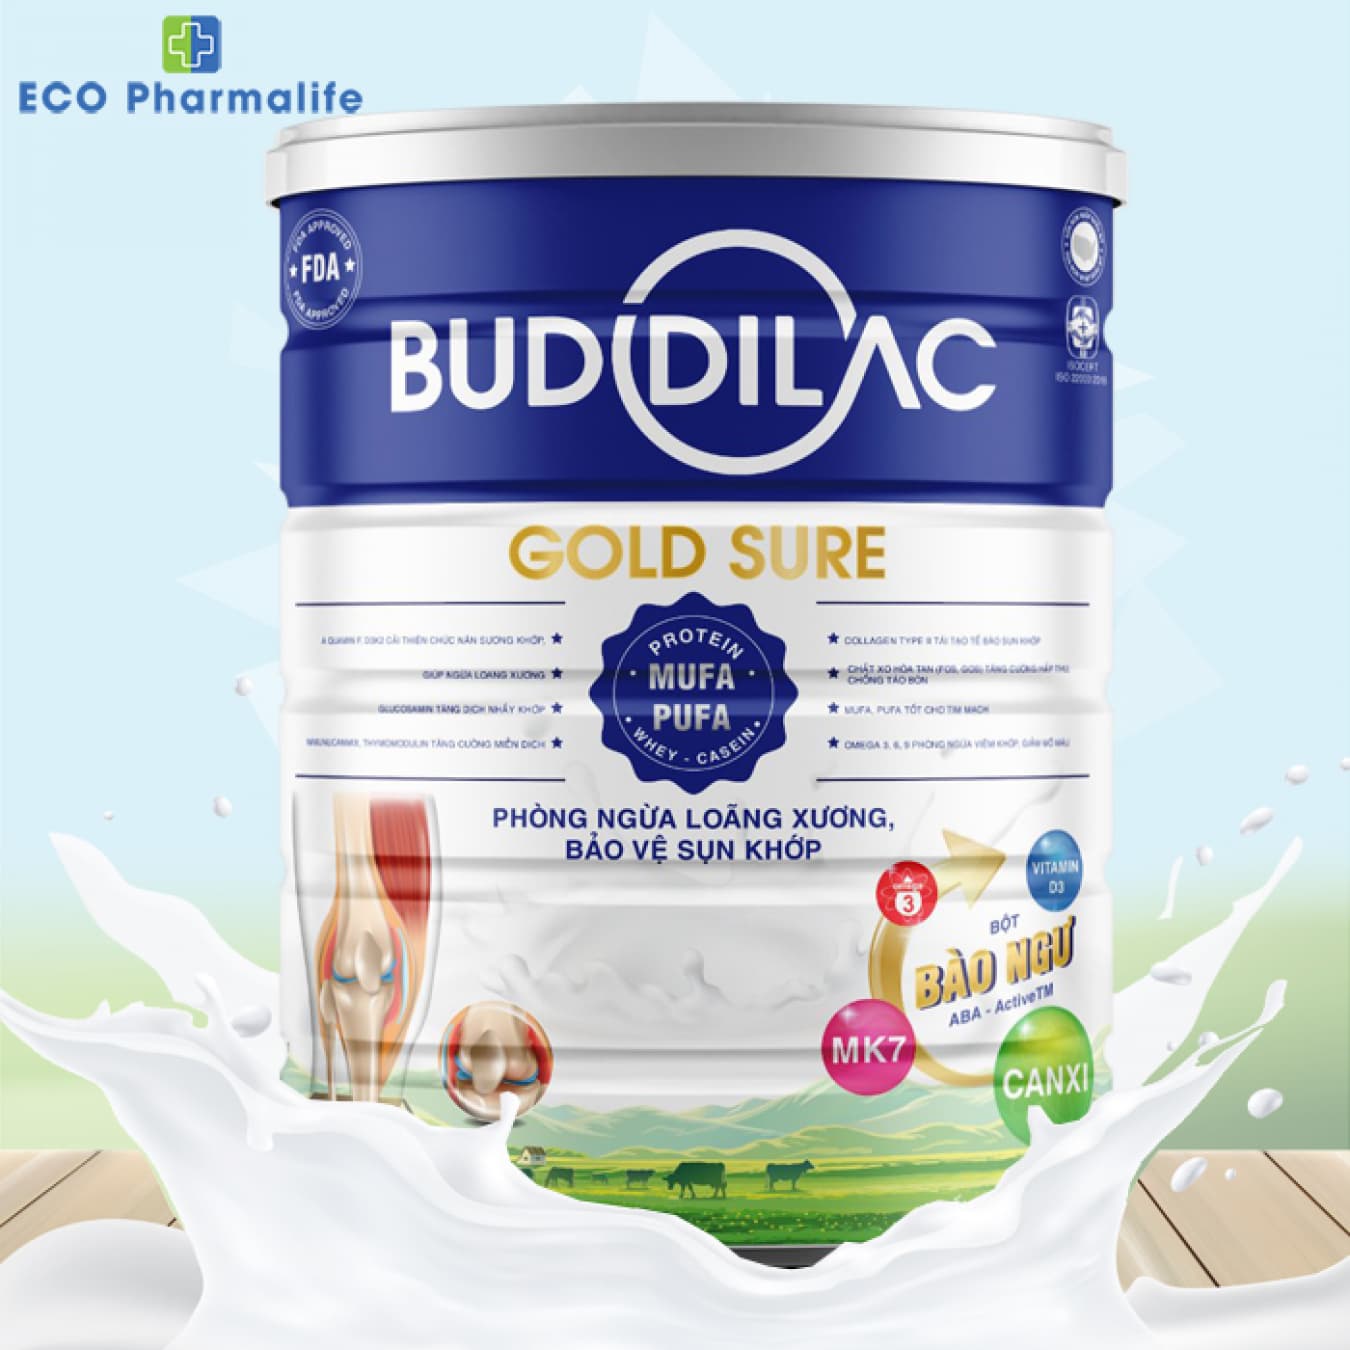 Sữa Buddilac Gold Sure hộp 900g phòng ngừa loãng xương